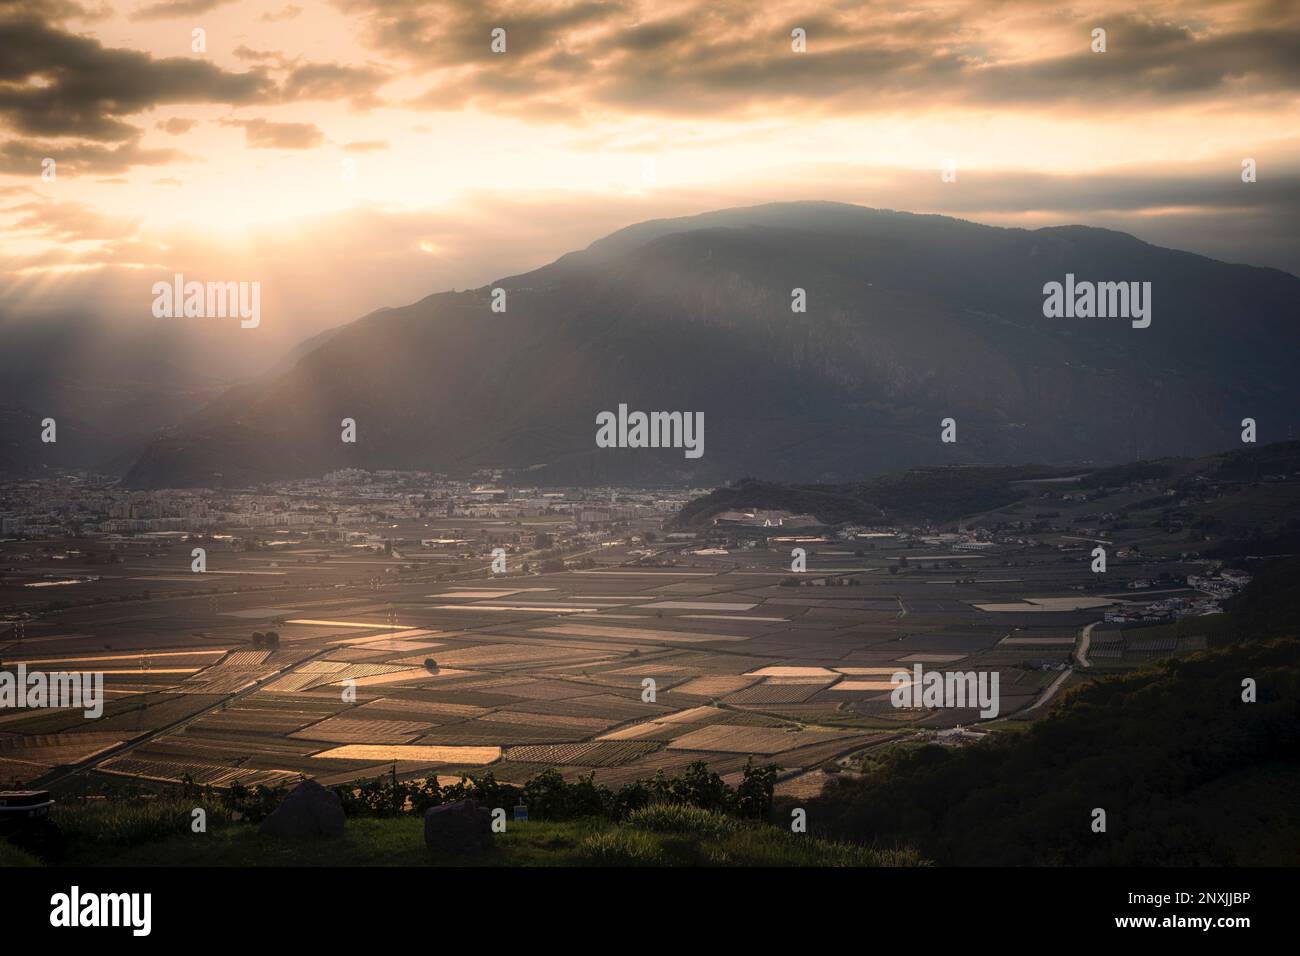 Los campos agrícolas llenan el valle de montaña en las afueras de Bolzano, Italia. Foto de stock